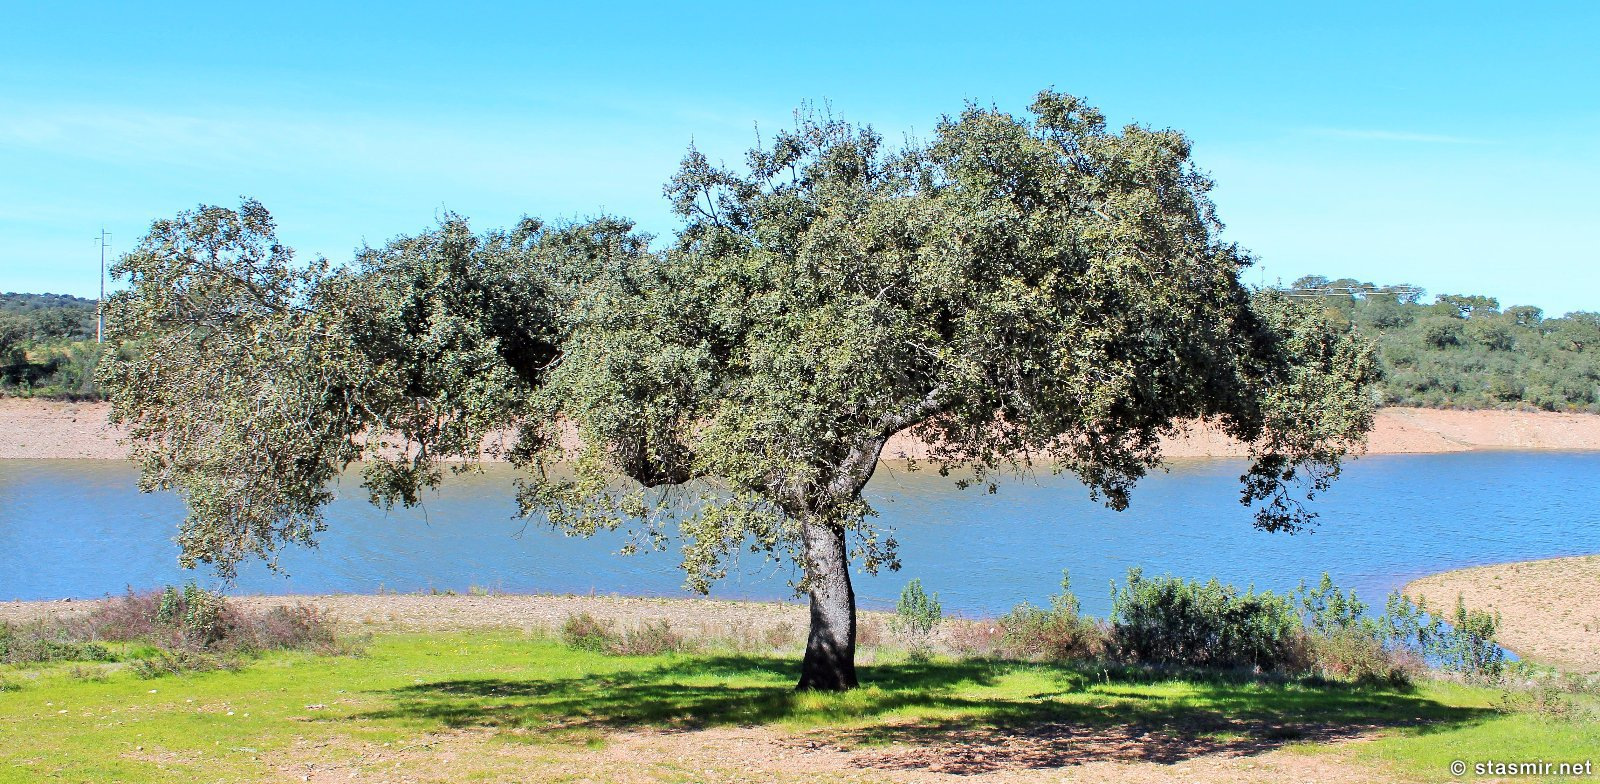 пробковый дуб или sobreiro где-то в провинции Алентежу в Португалии, фото Стасмир, photo Stasmir